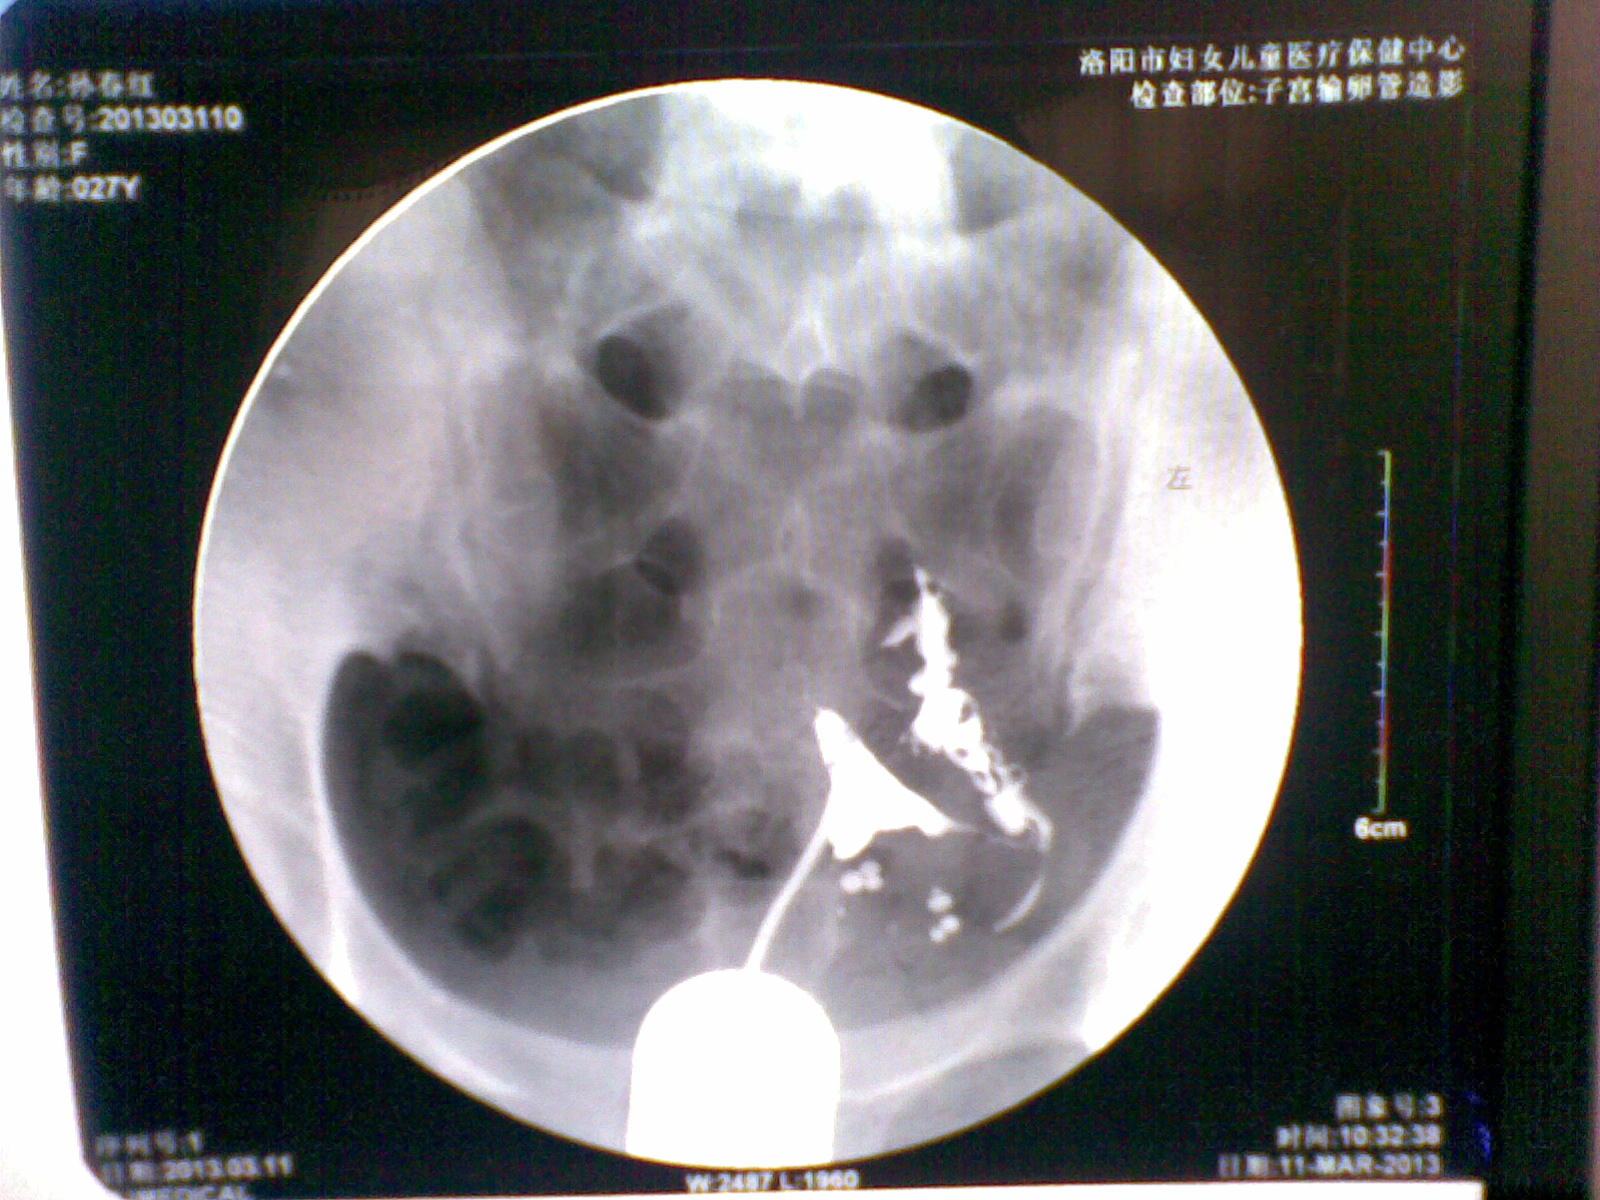 【腹腔镜篇】输卵管妊娠保守手术 - 宫腔镜 - 上海世音光电仪器有限公司